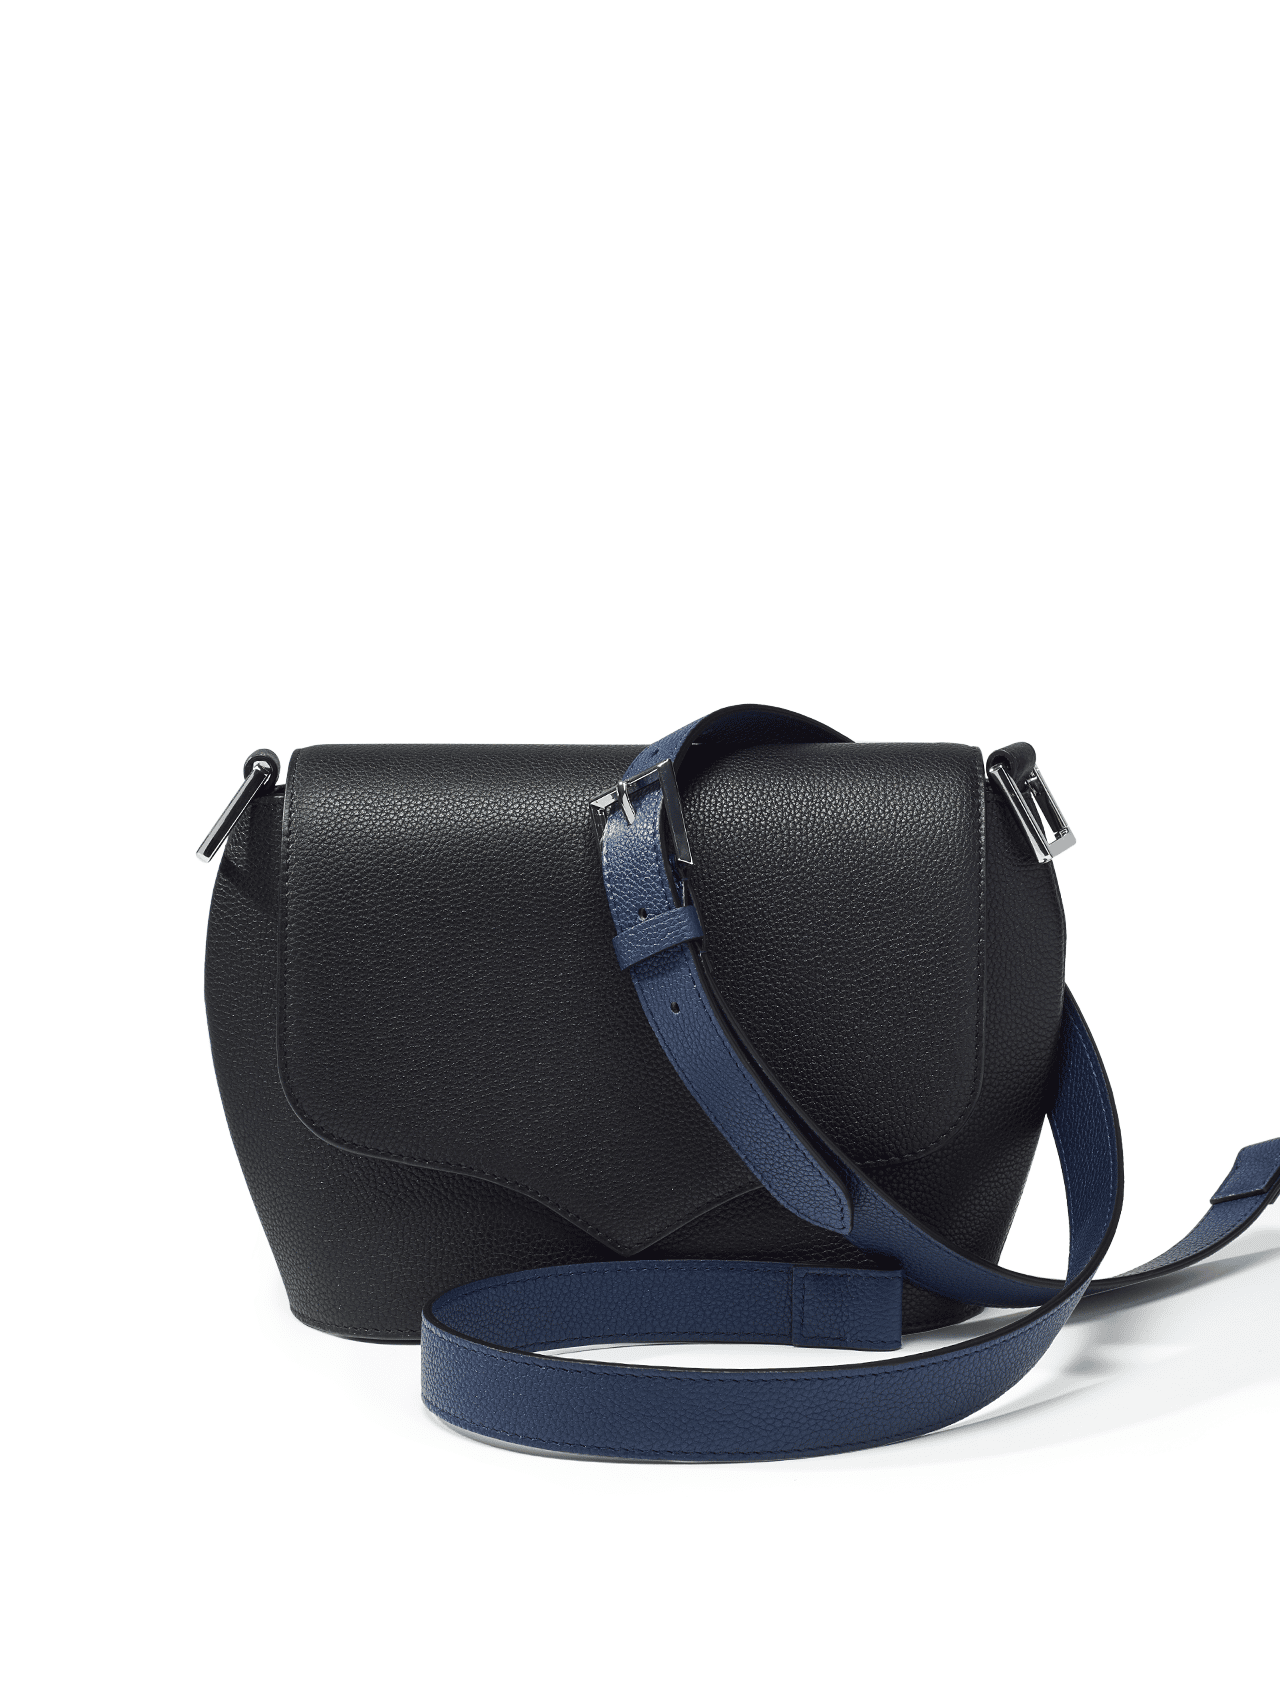 bag leather jean rousseau black blue